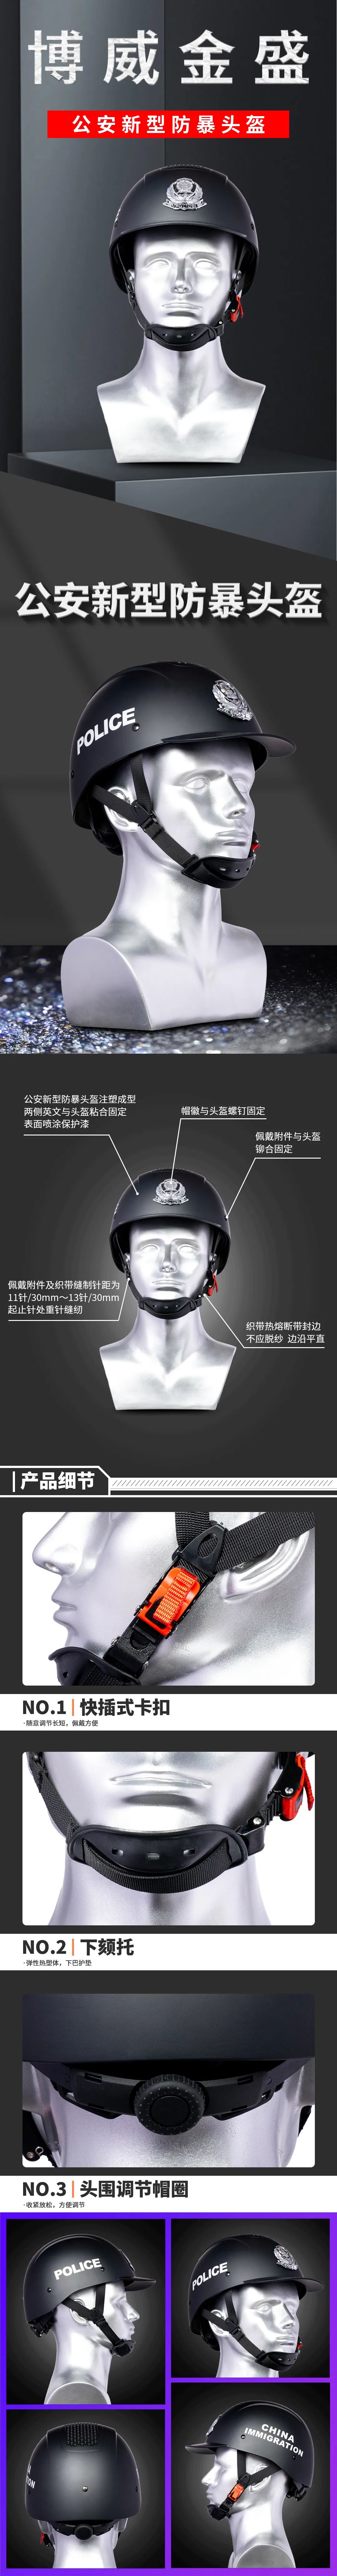 移民管理局已列装 | 新型防暴头盔